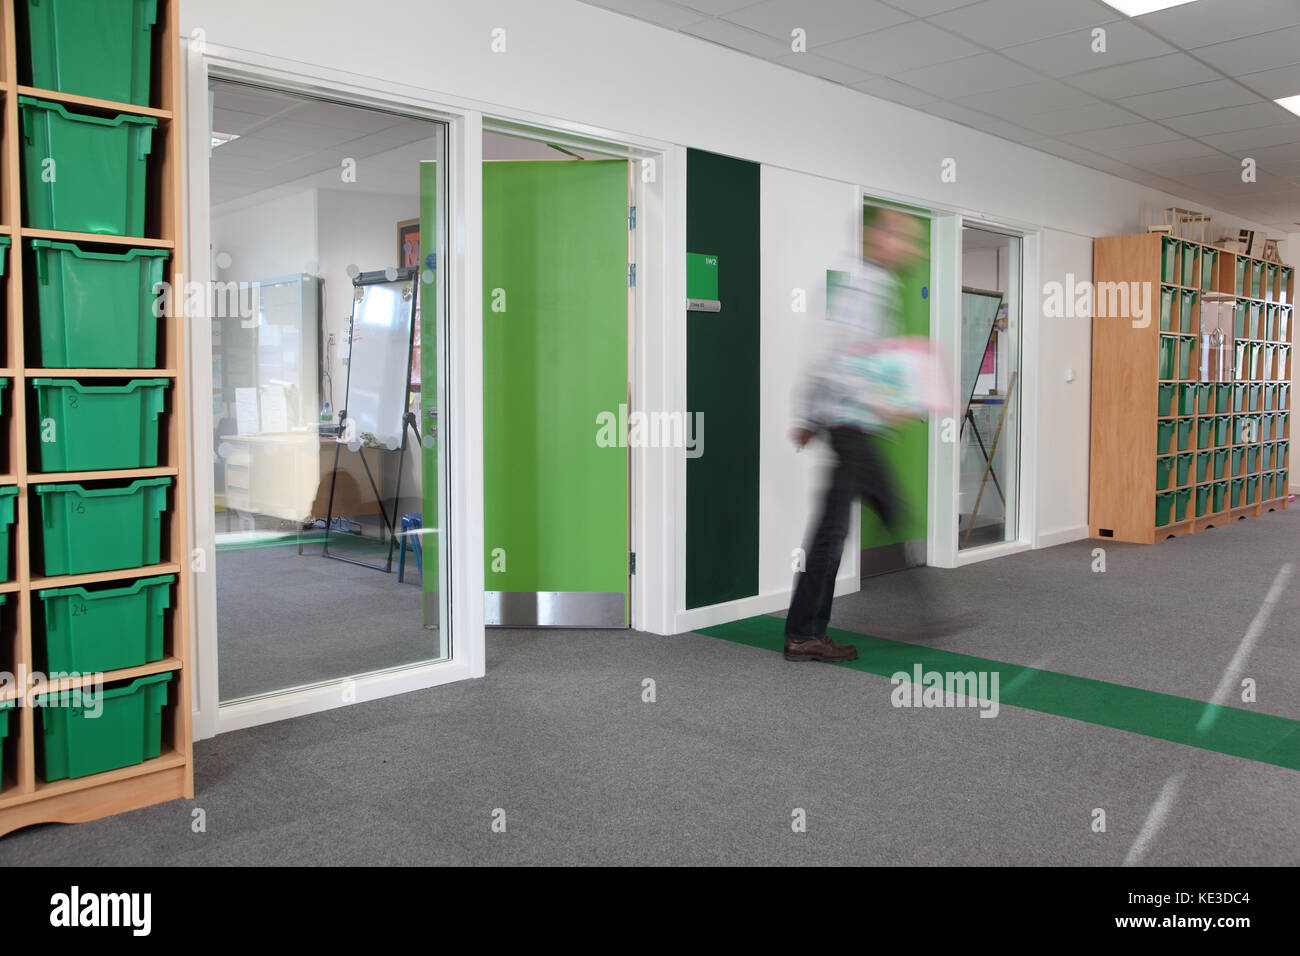 Farbcodierte Klassenzimmer Korridor in einem neuen London Grundschule. Zeigt Lehrer verlassen Klassenzimmer - durch Bewegung verwischt. Stockfoto